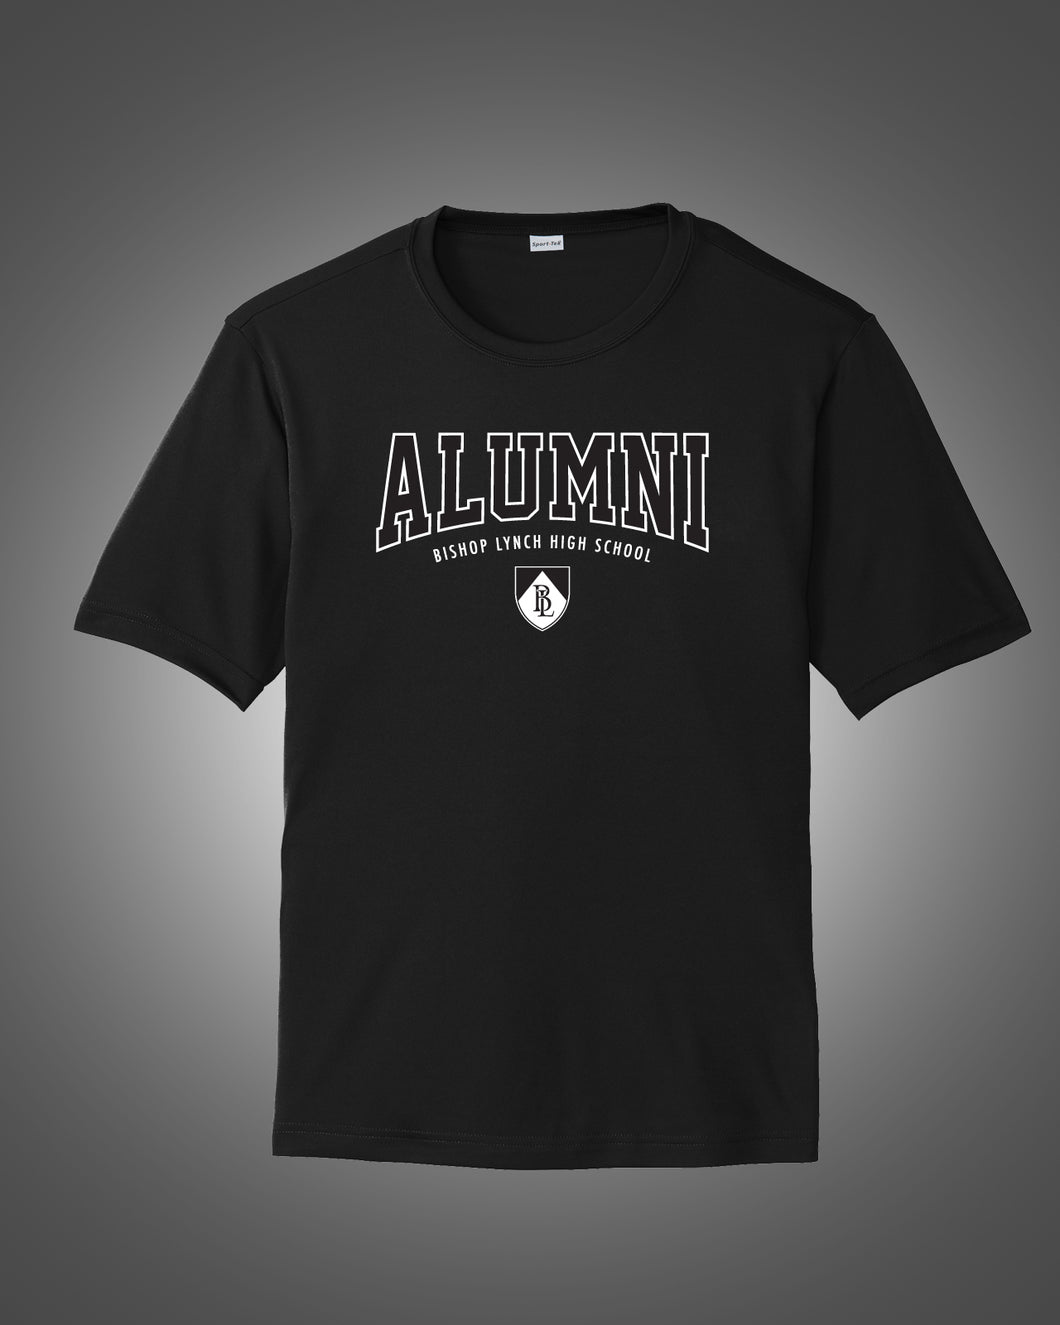 Alumni - Short Sleeve Tee - Option #2 - Black